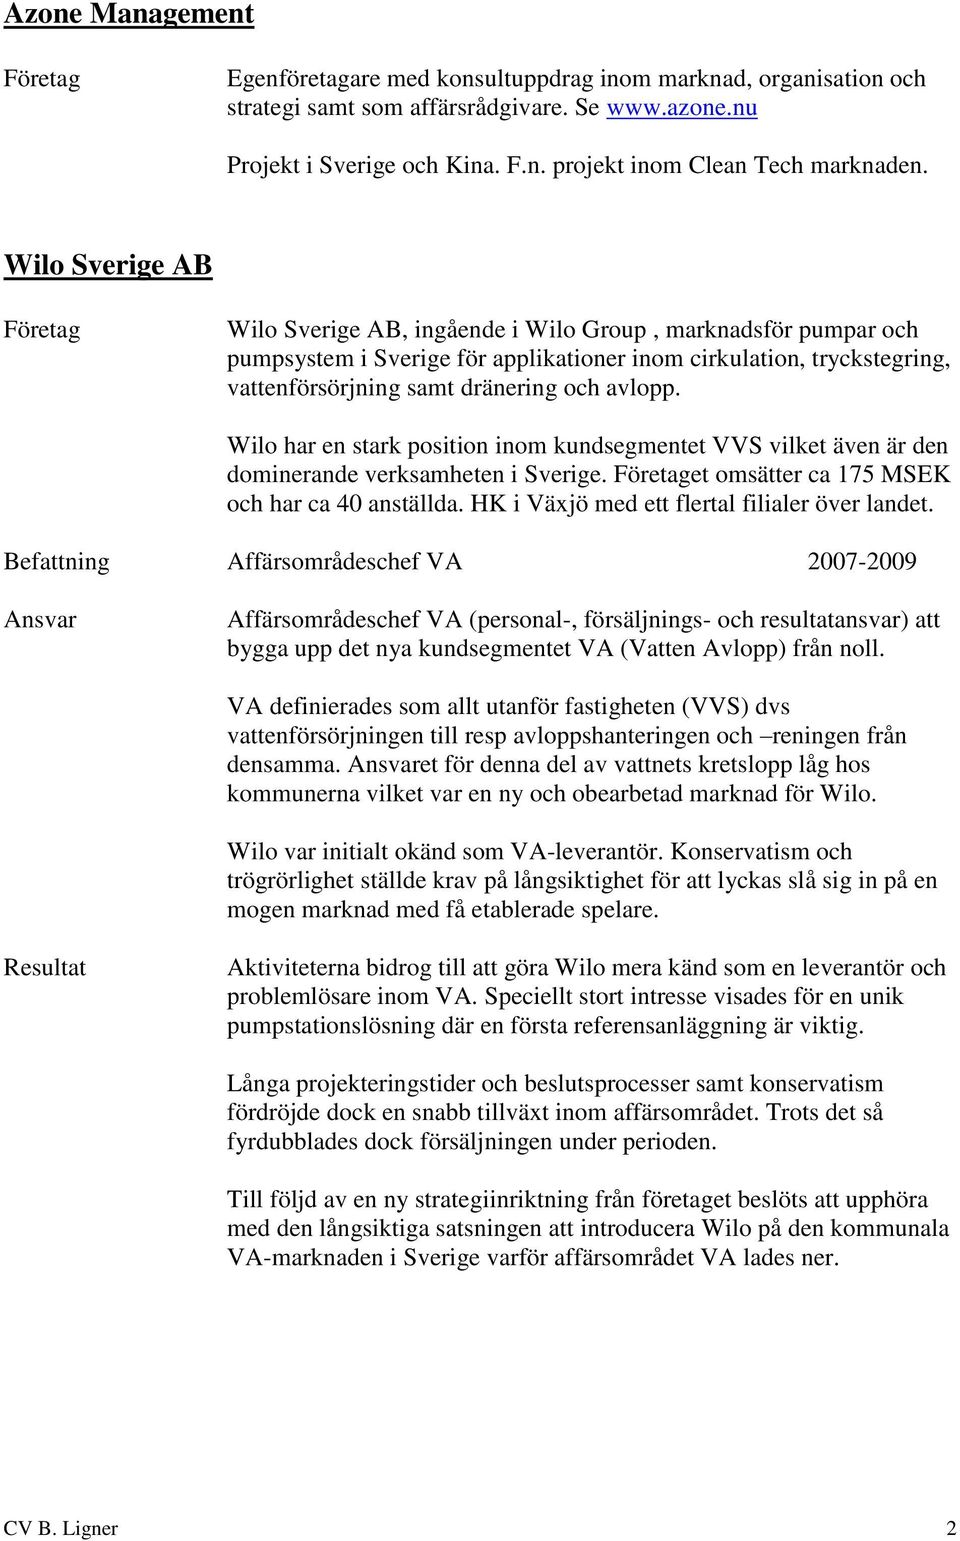 Wilo har en stark position inom kundsegmentet VVS vilket även är den dominerande verksamheten i Sverige. et omsätter ca 175 MSEK och har ca 40 anställda.